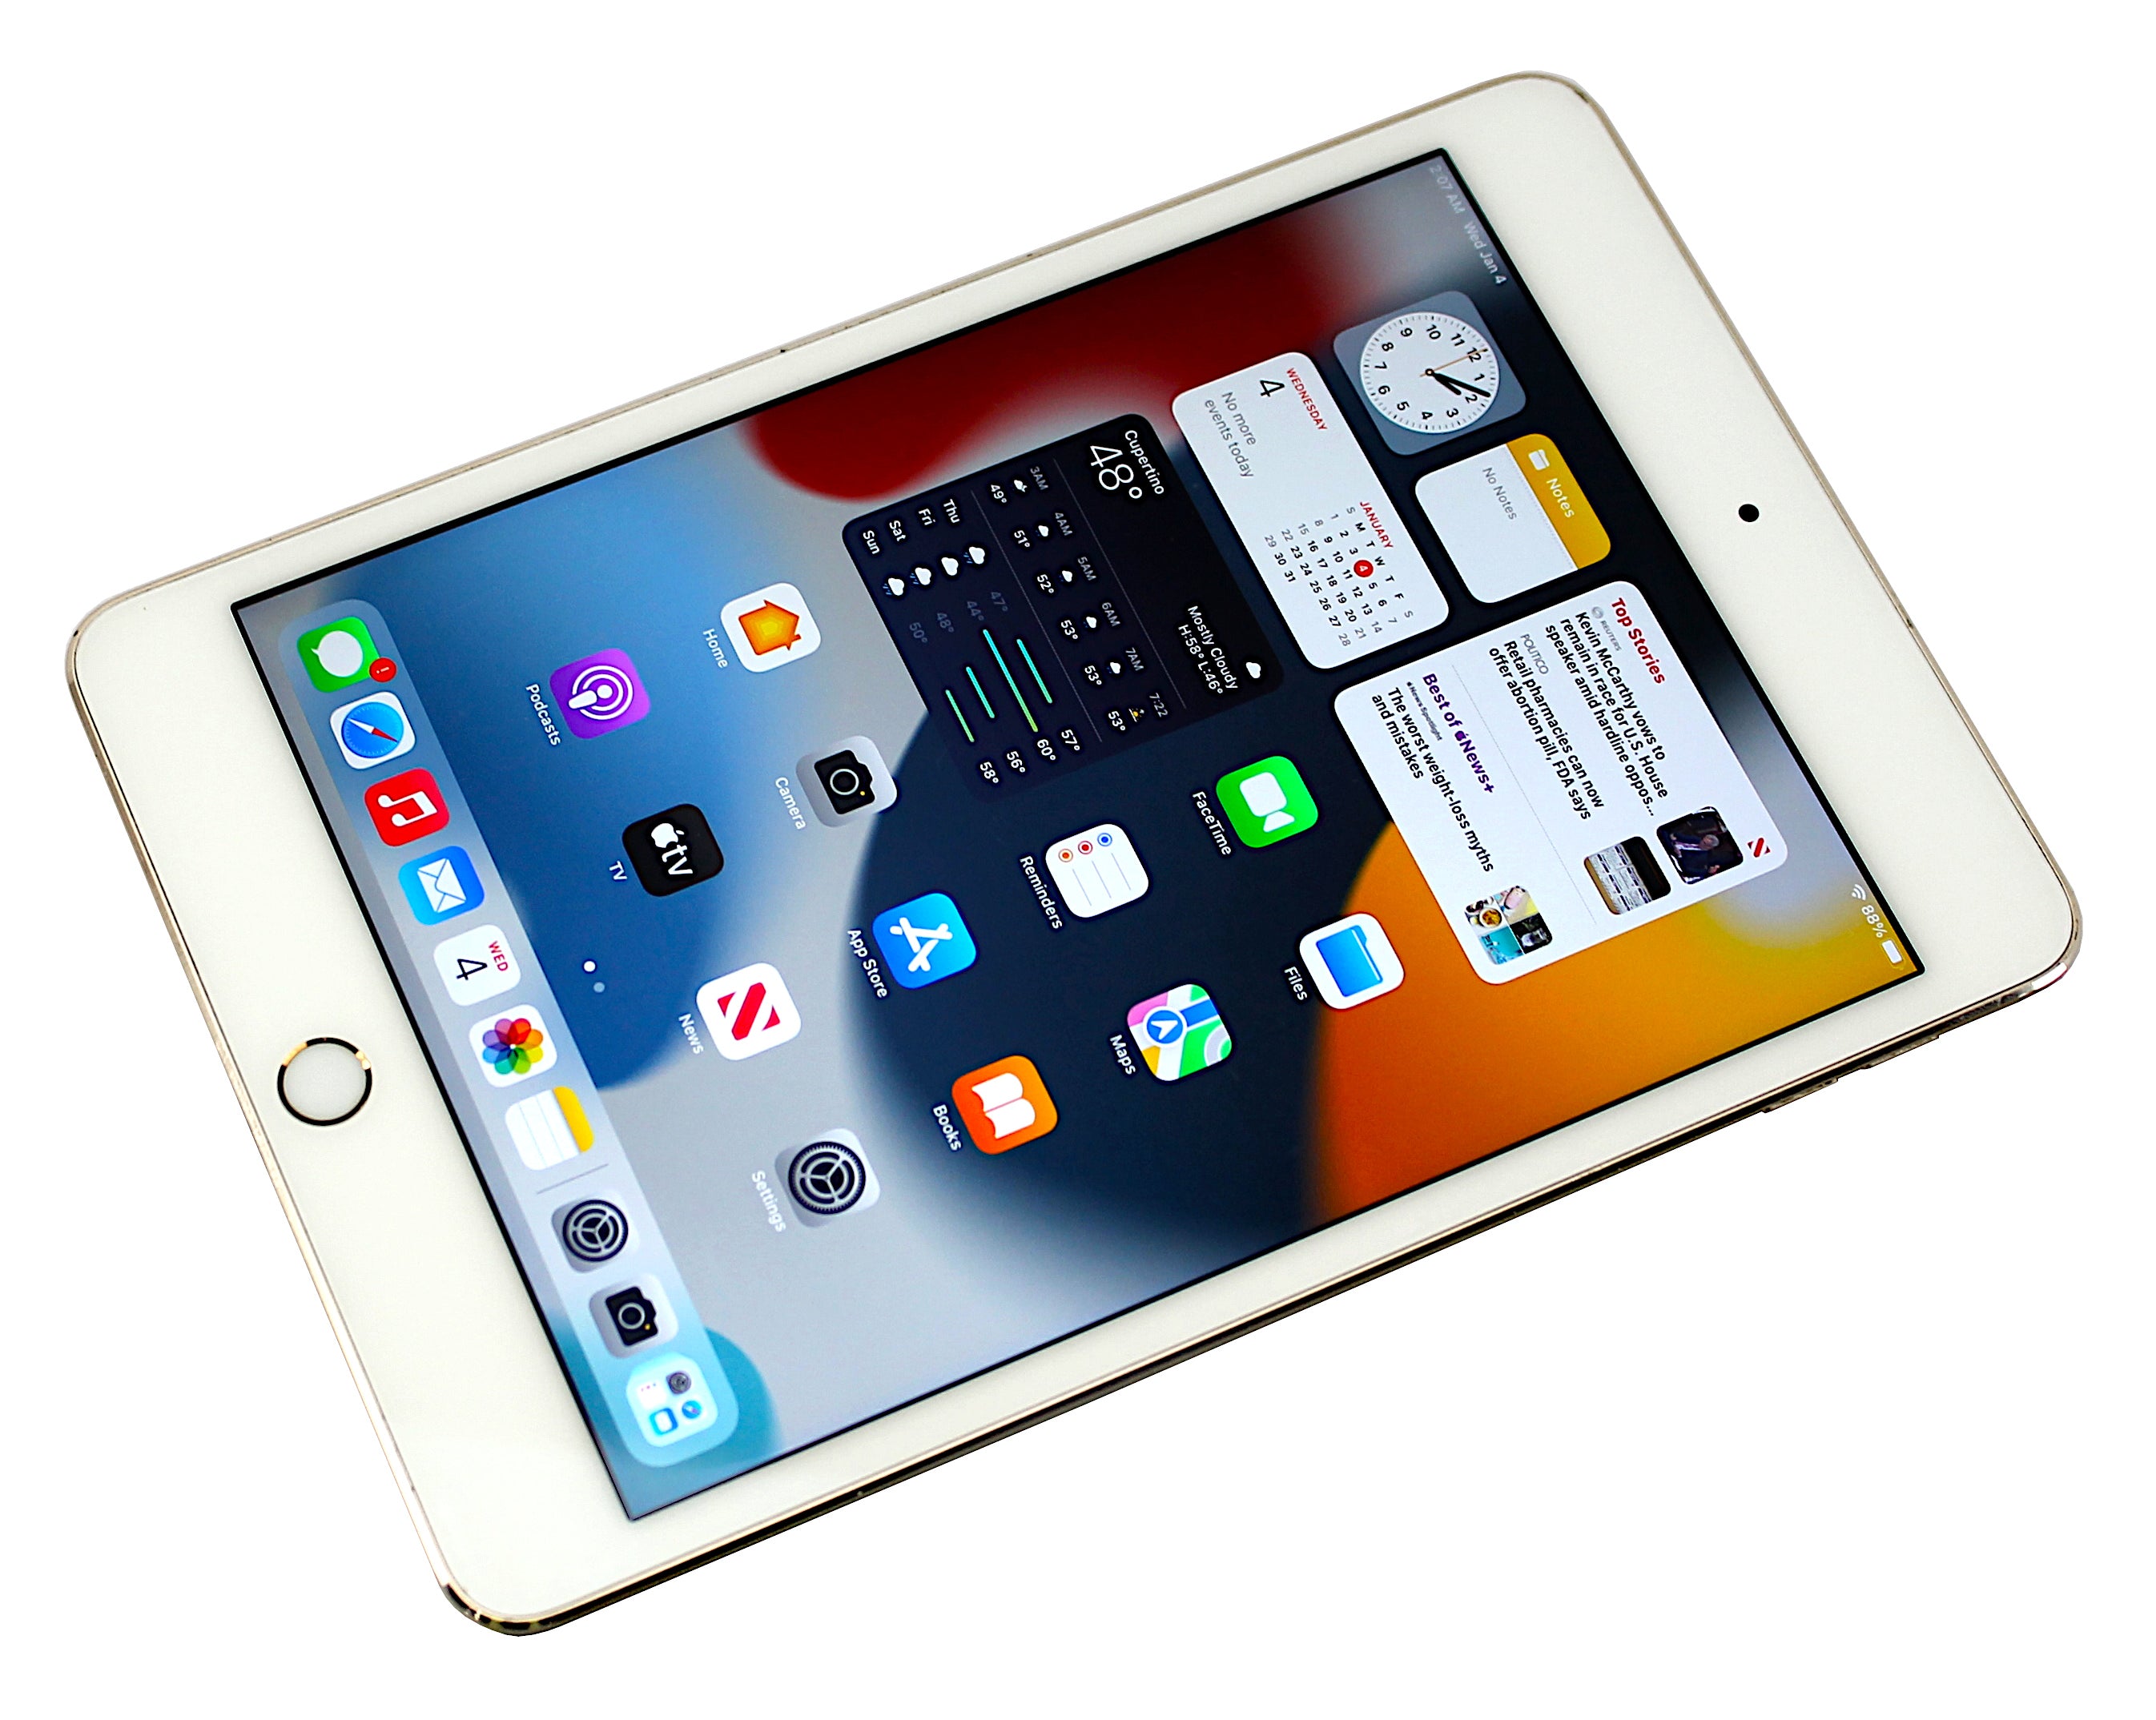 Apple iPad Mini 4th Generation Tablet, 64GB, WiFi + GSM, Gold, A1550